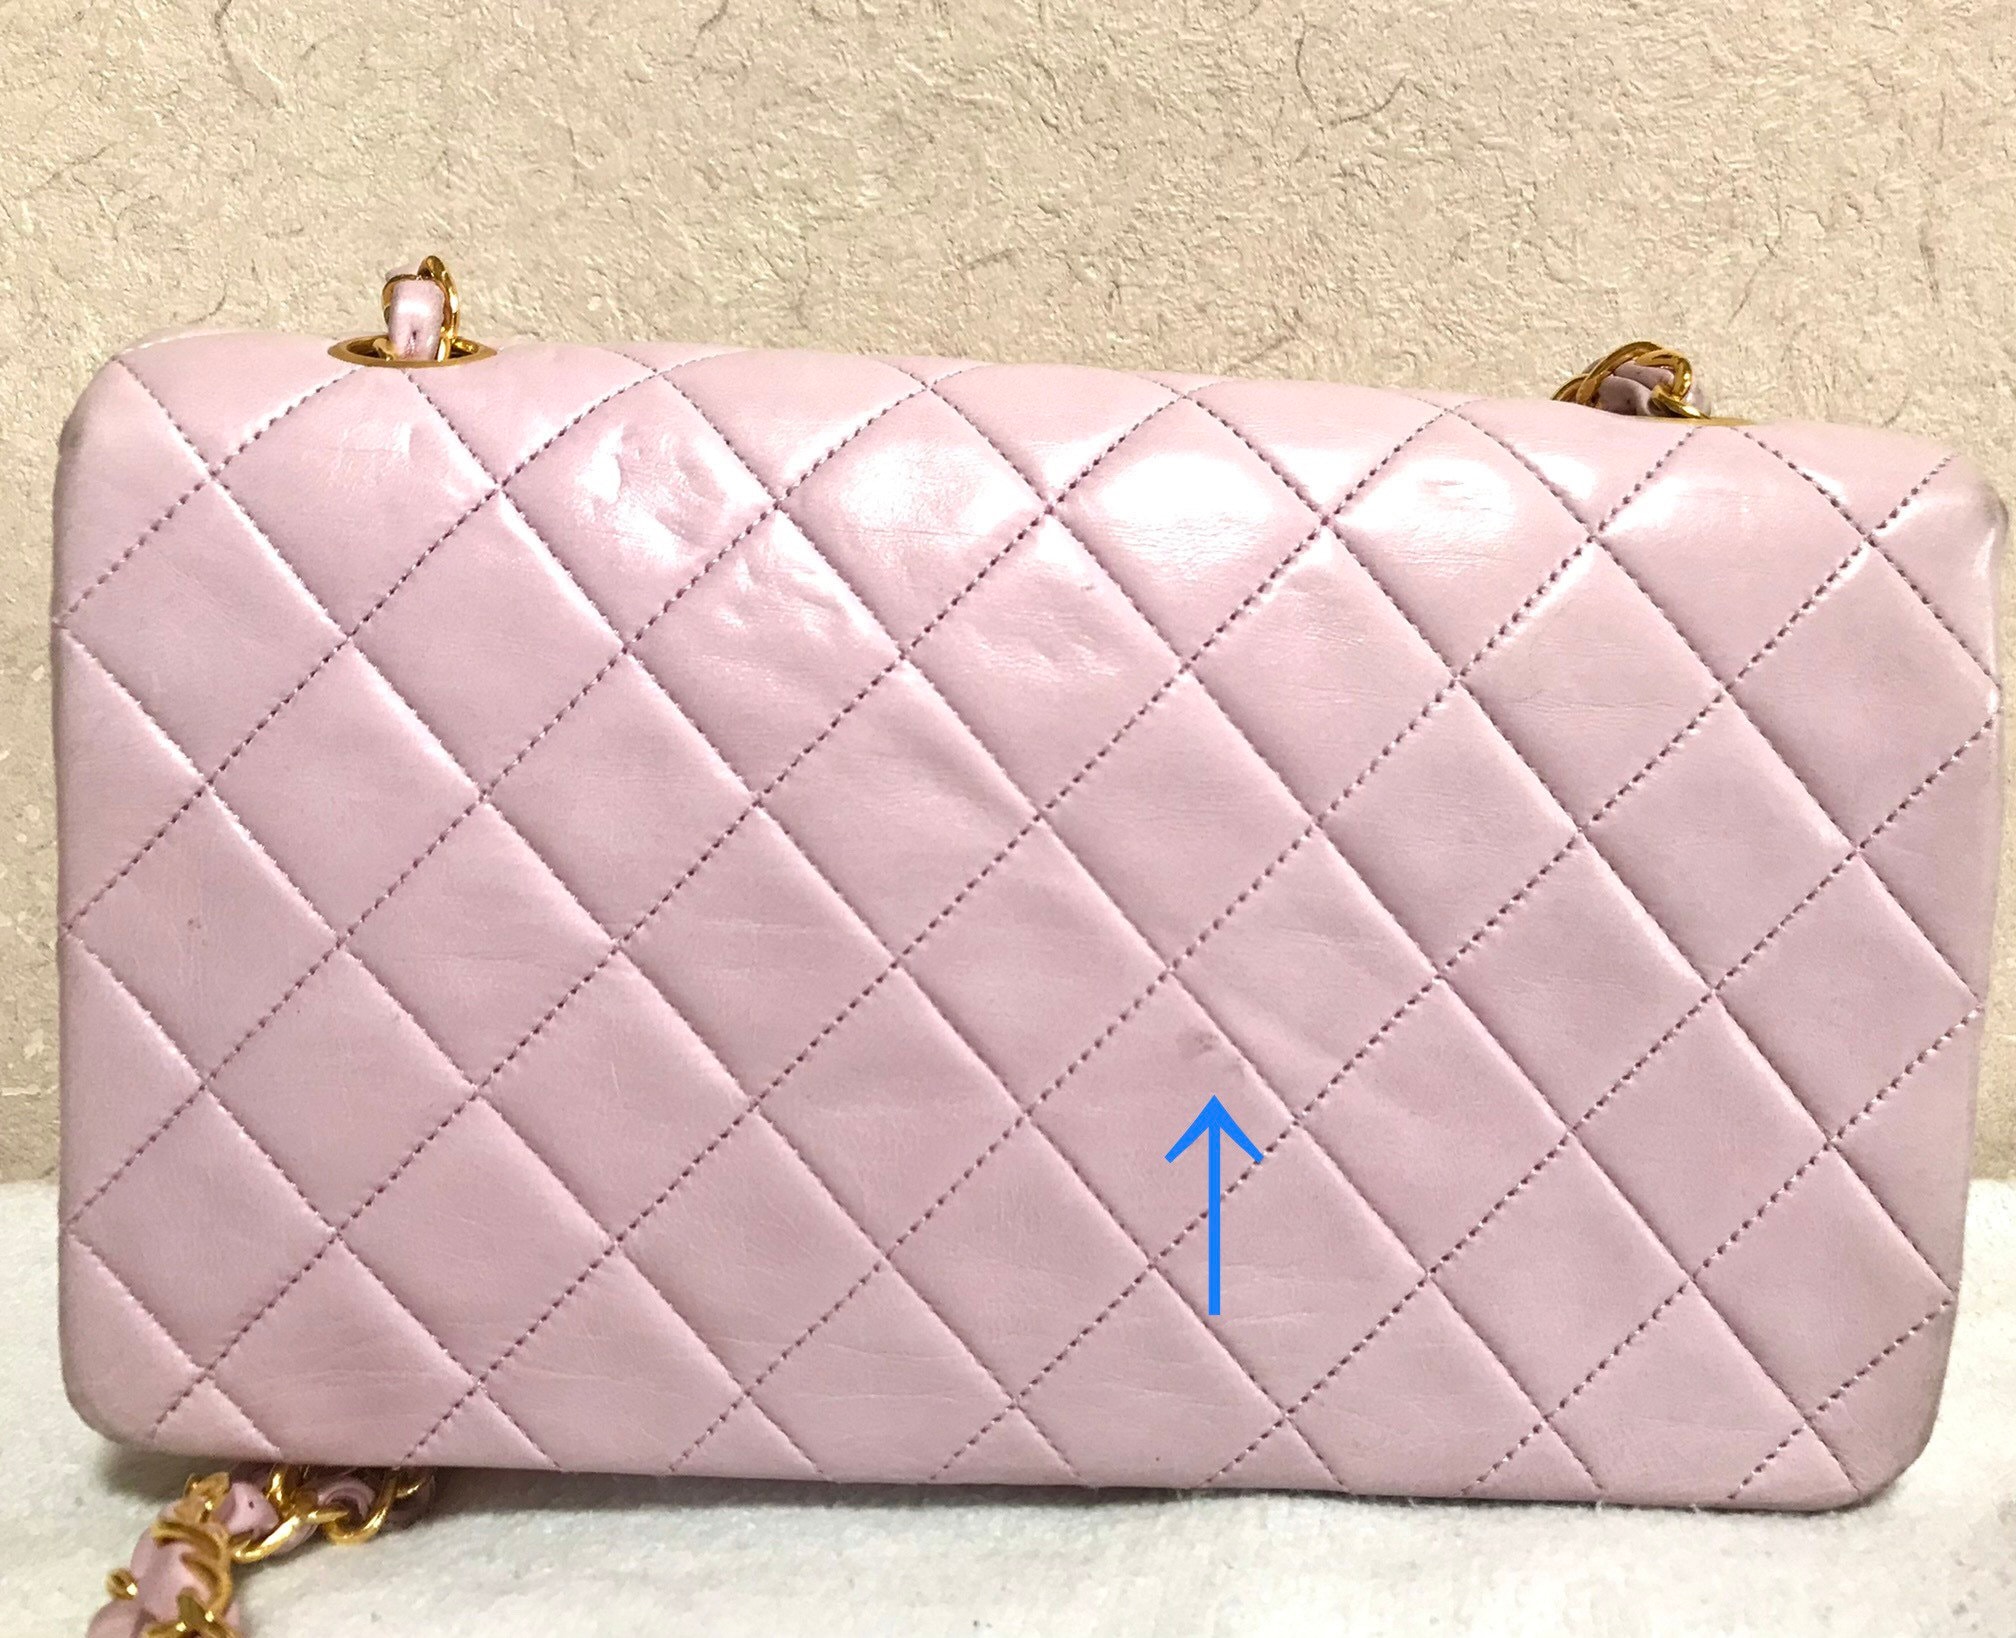 light pink chanel bag vintage